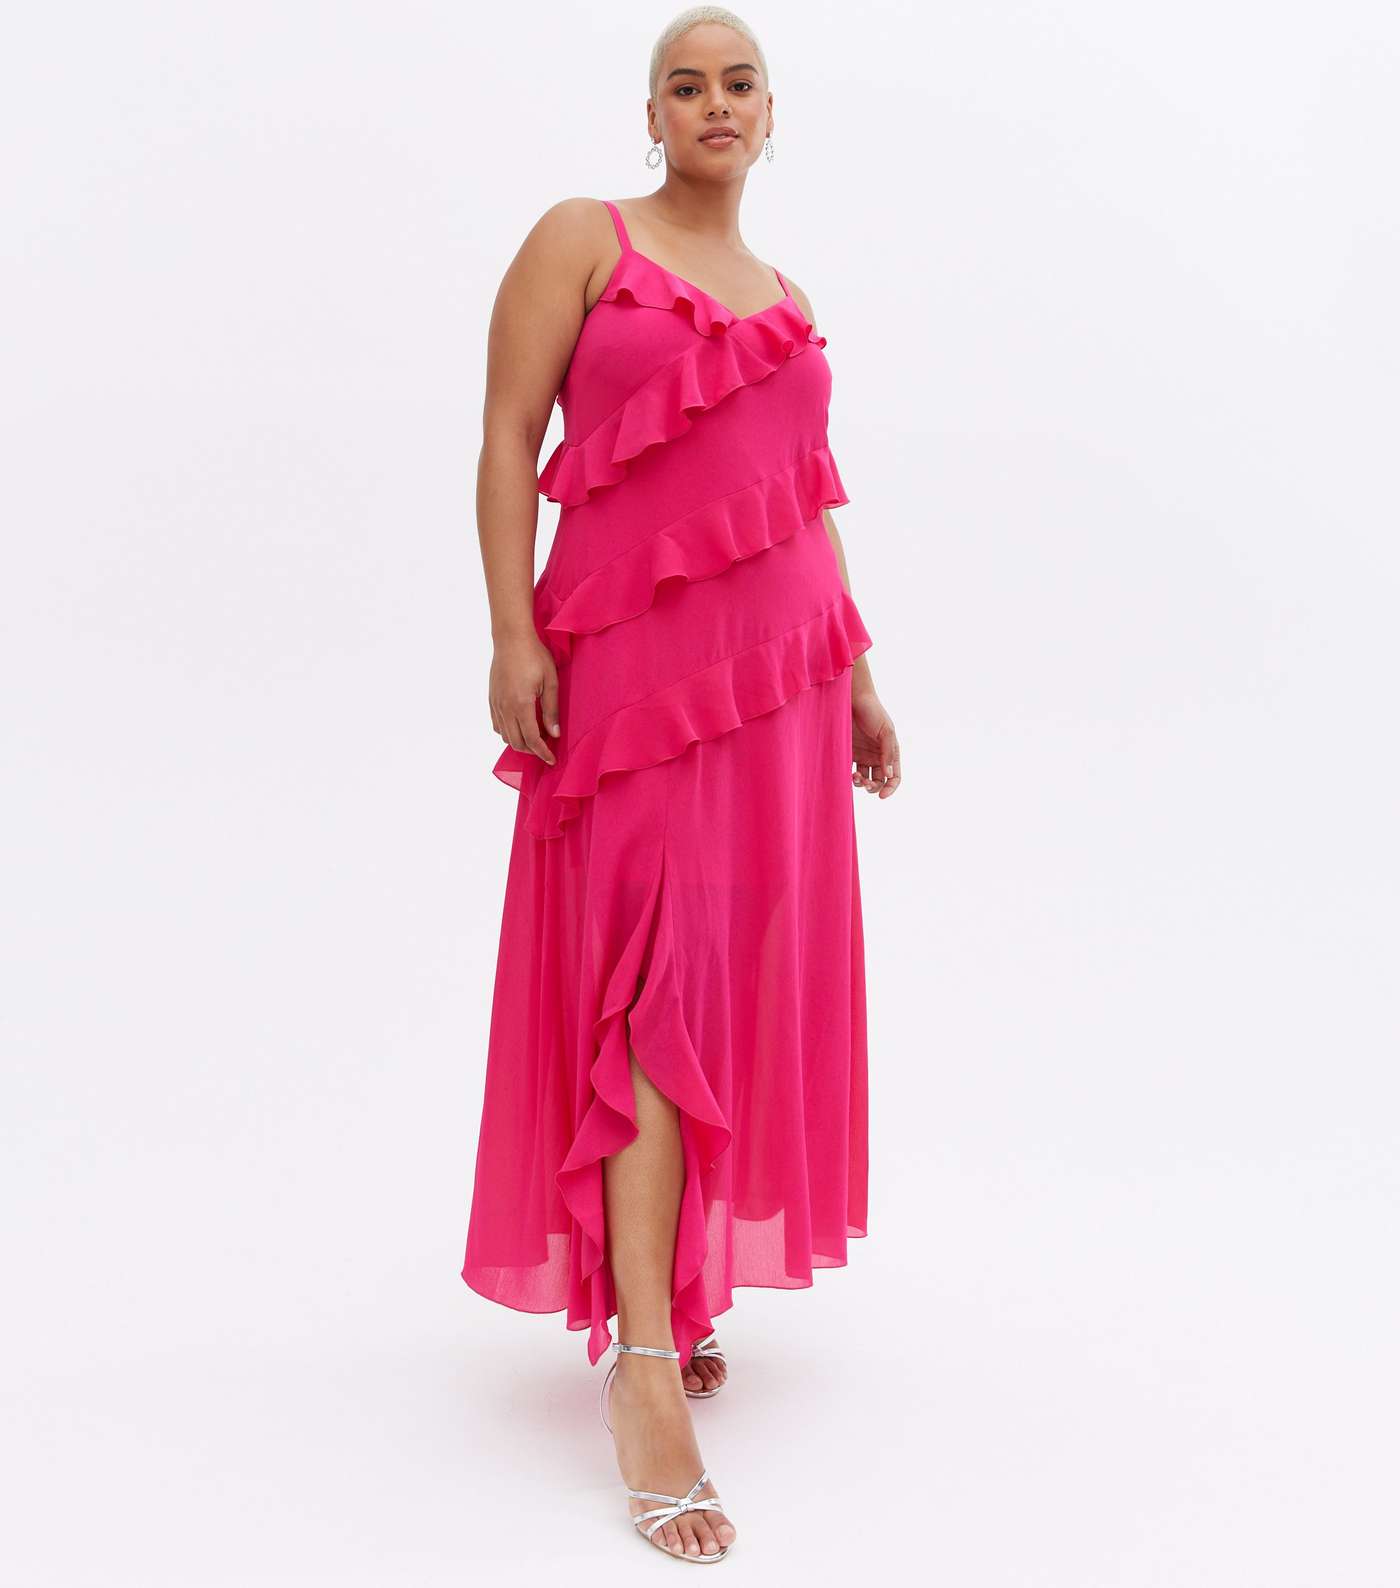 Curves Bright Pink Chiffon Ruffle Maxi Dress Image 2